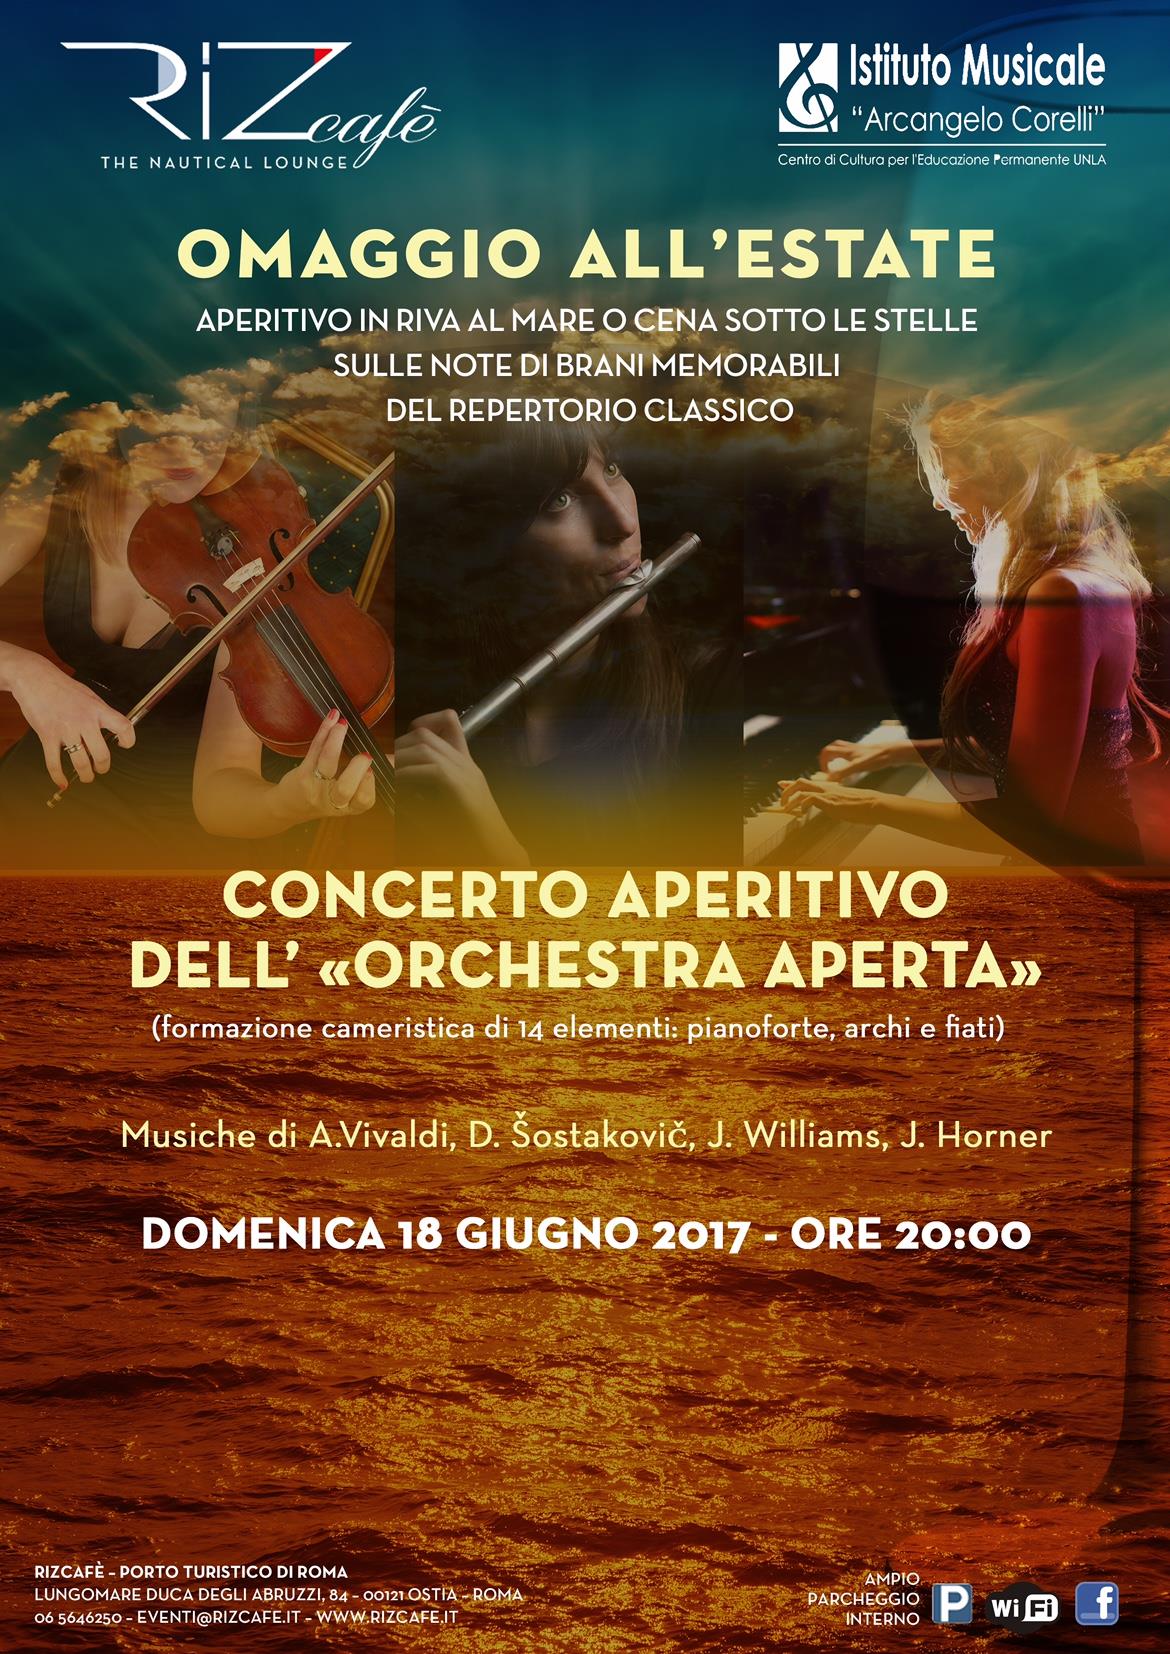 2017 Locandina concerto Orchestra aperta 18 giugno RizCafé Ostia